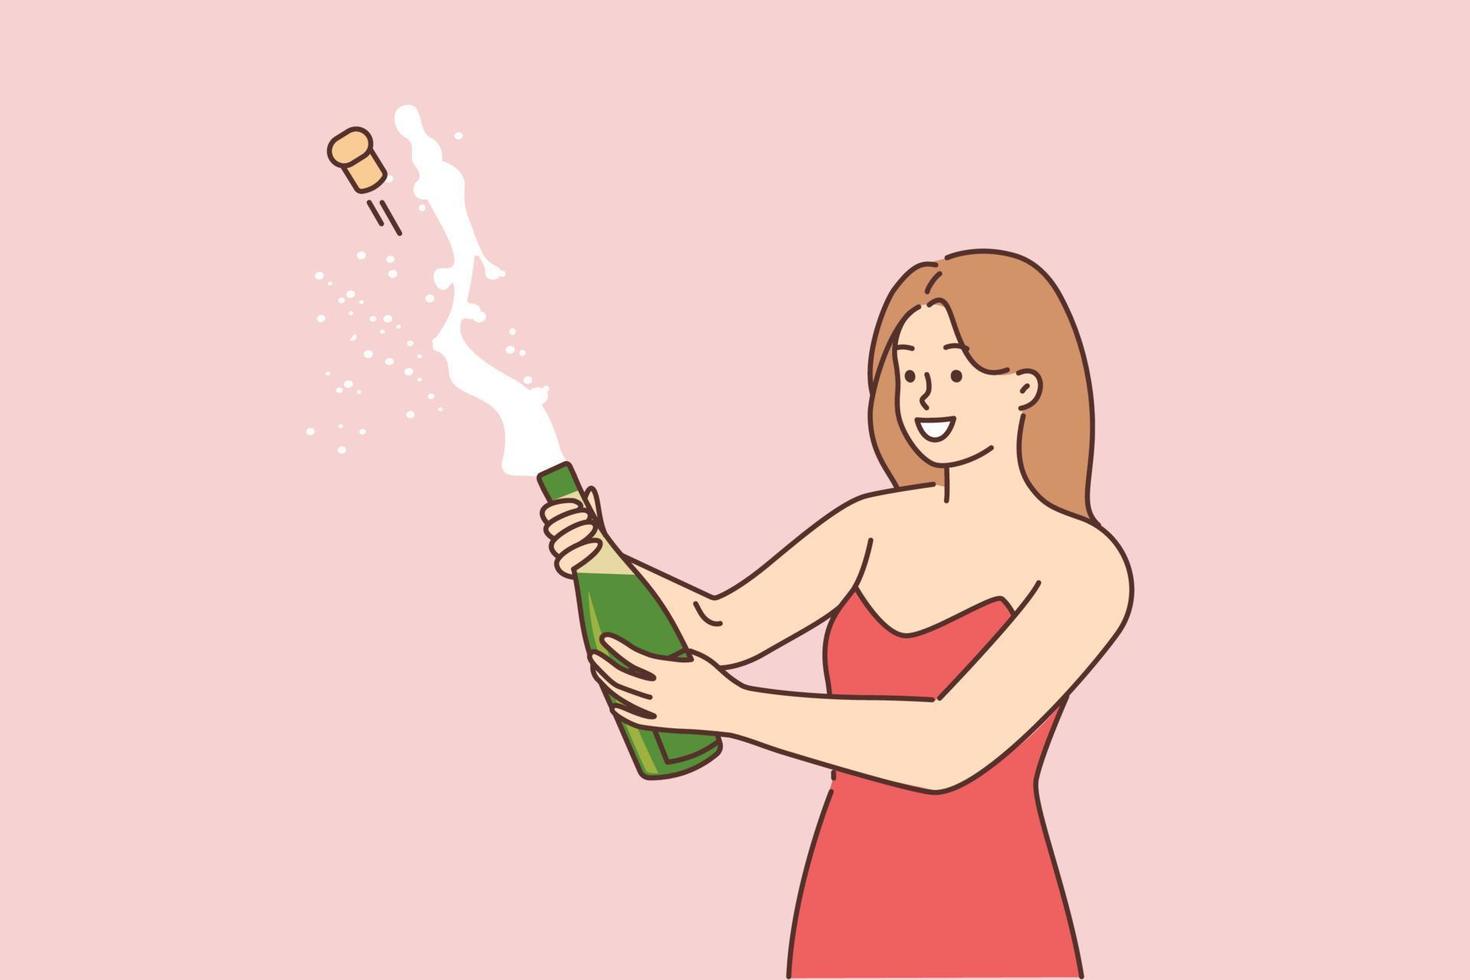 viering concept. jong meisje opening een fles van Champagne en hebben plezier. geopend Champagne gespoten, vlak bewerkbare vector illustratie